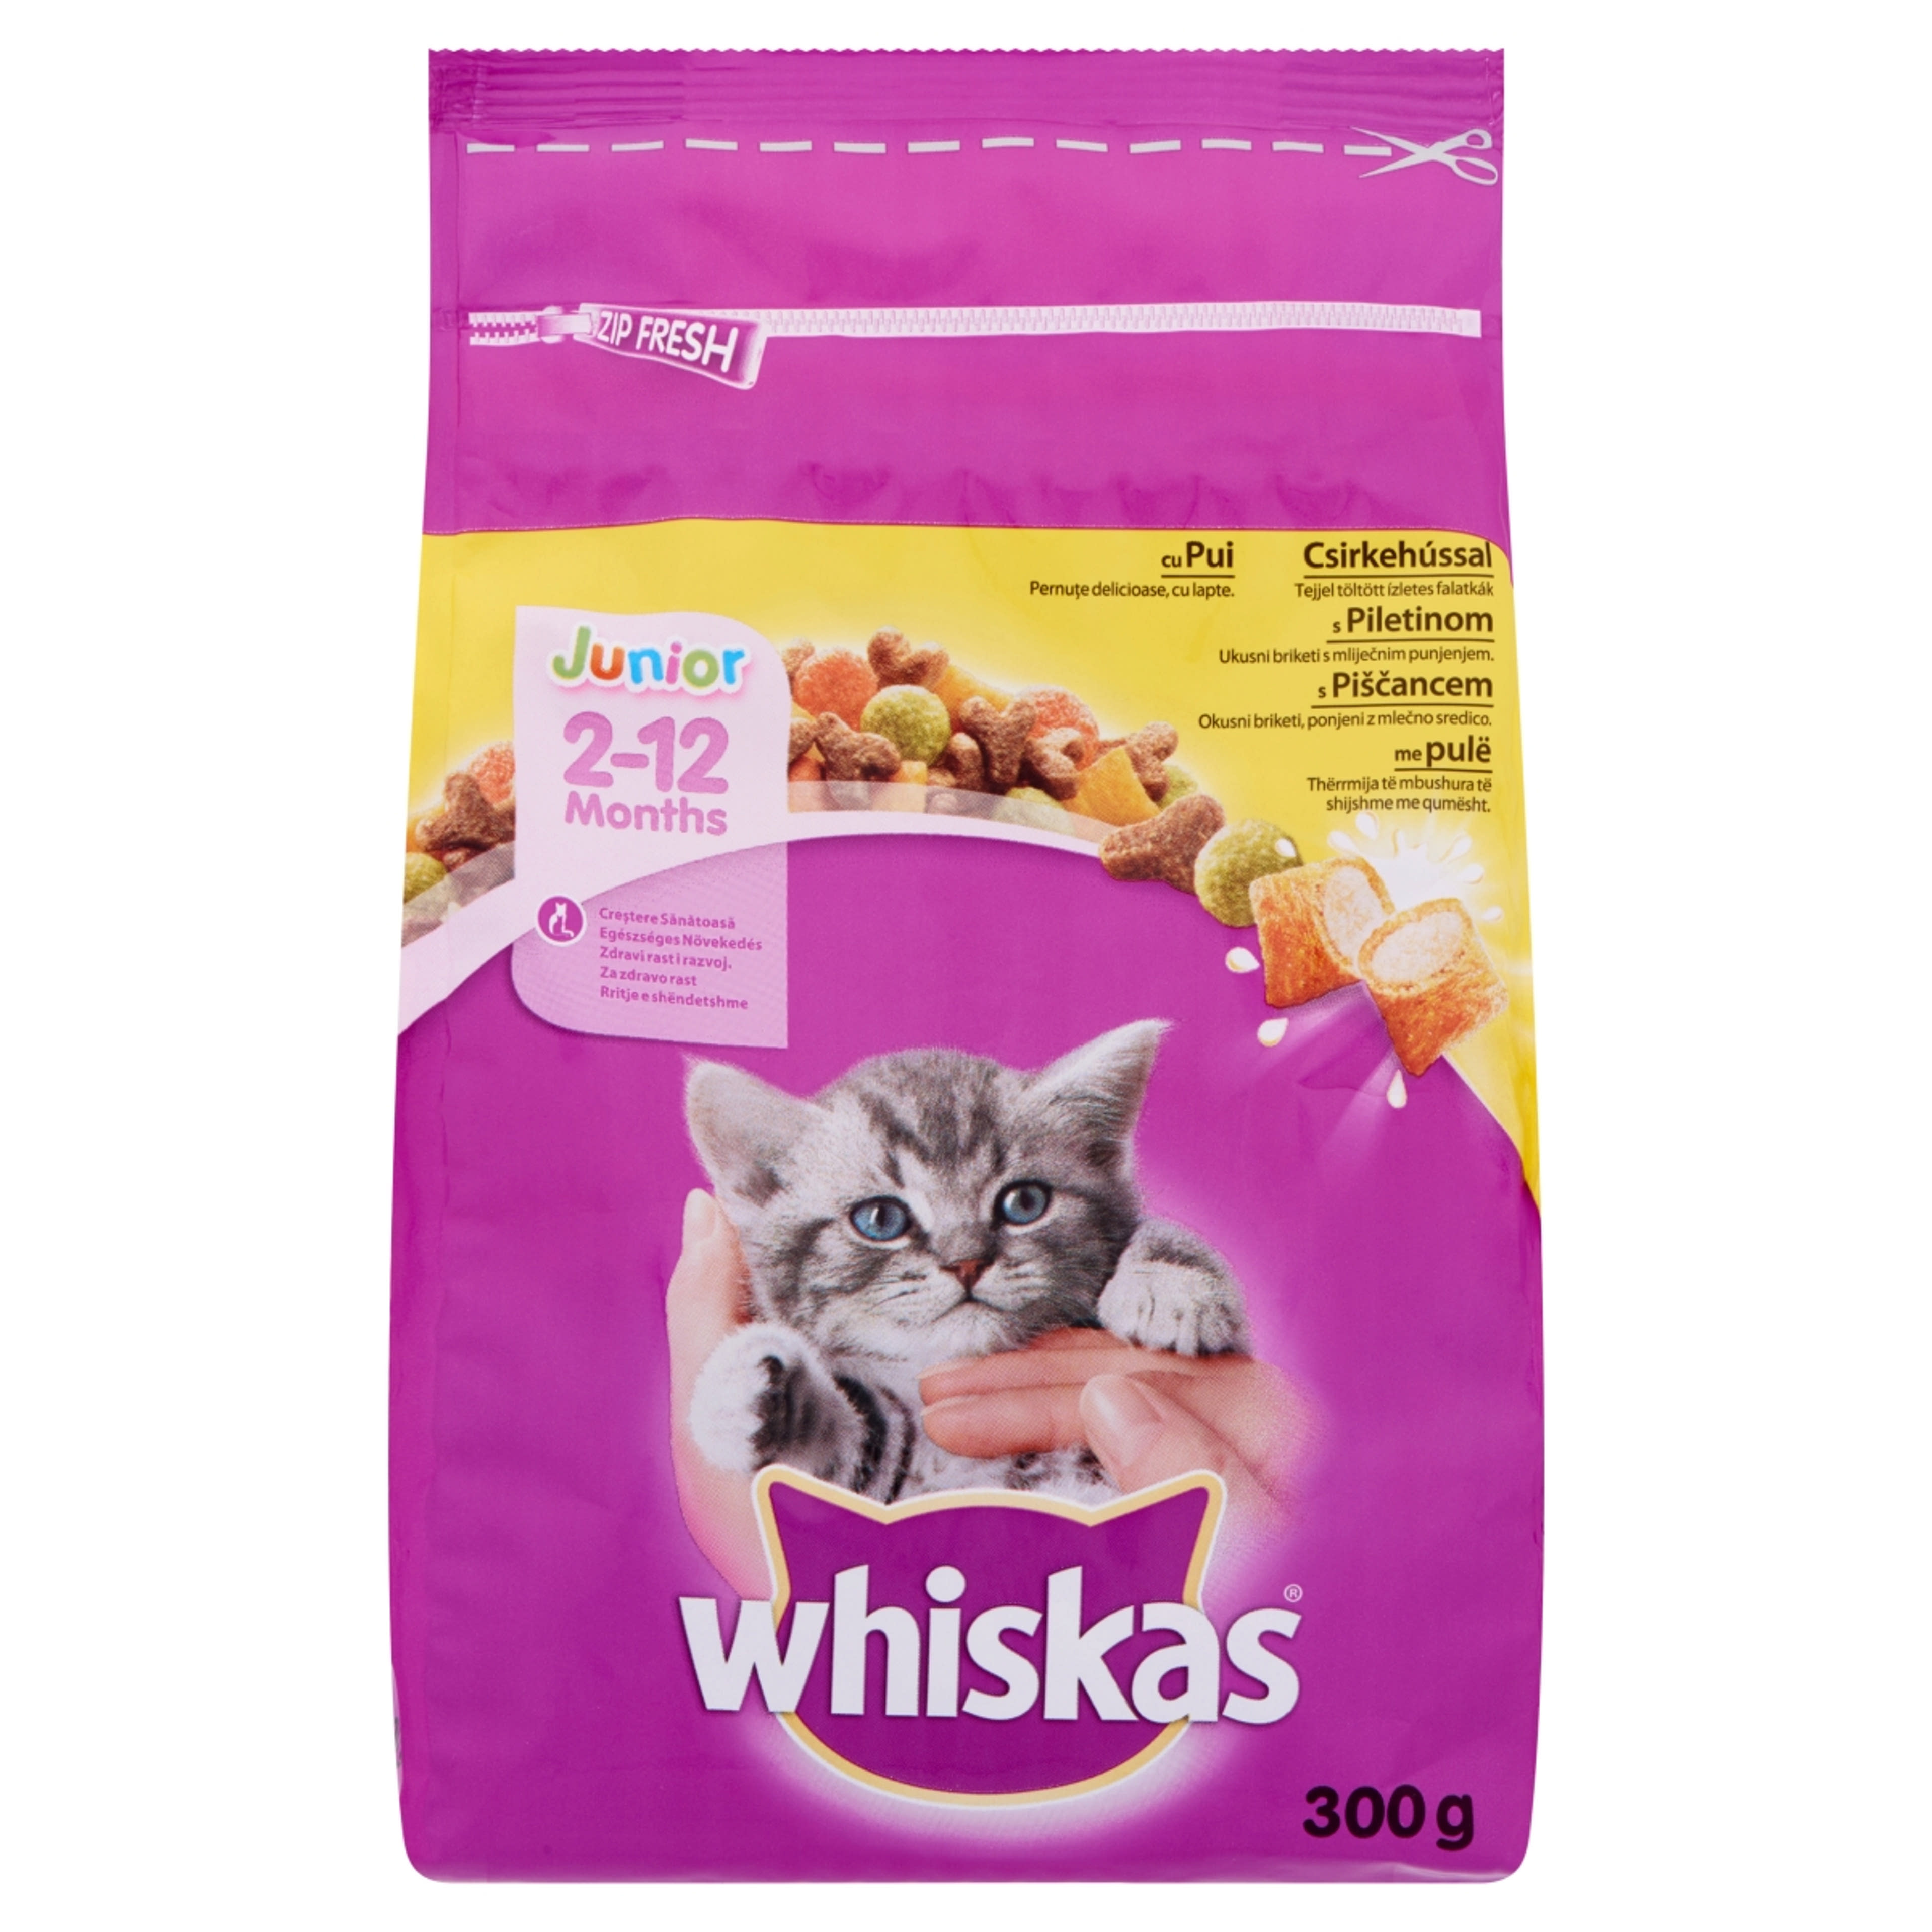 Whiskas Junior teljes értékű szárazeledel macskáknak, csirkehússal - 300 g